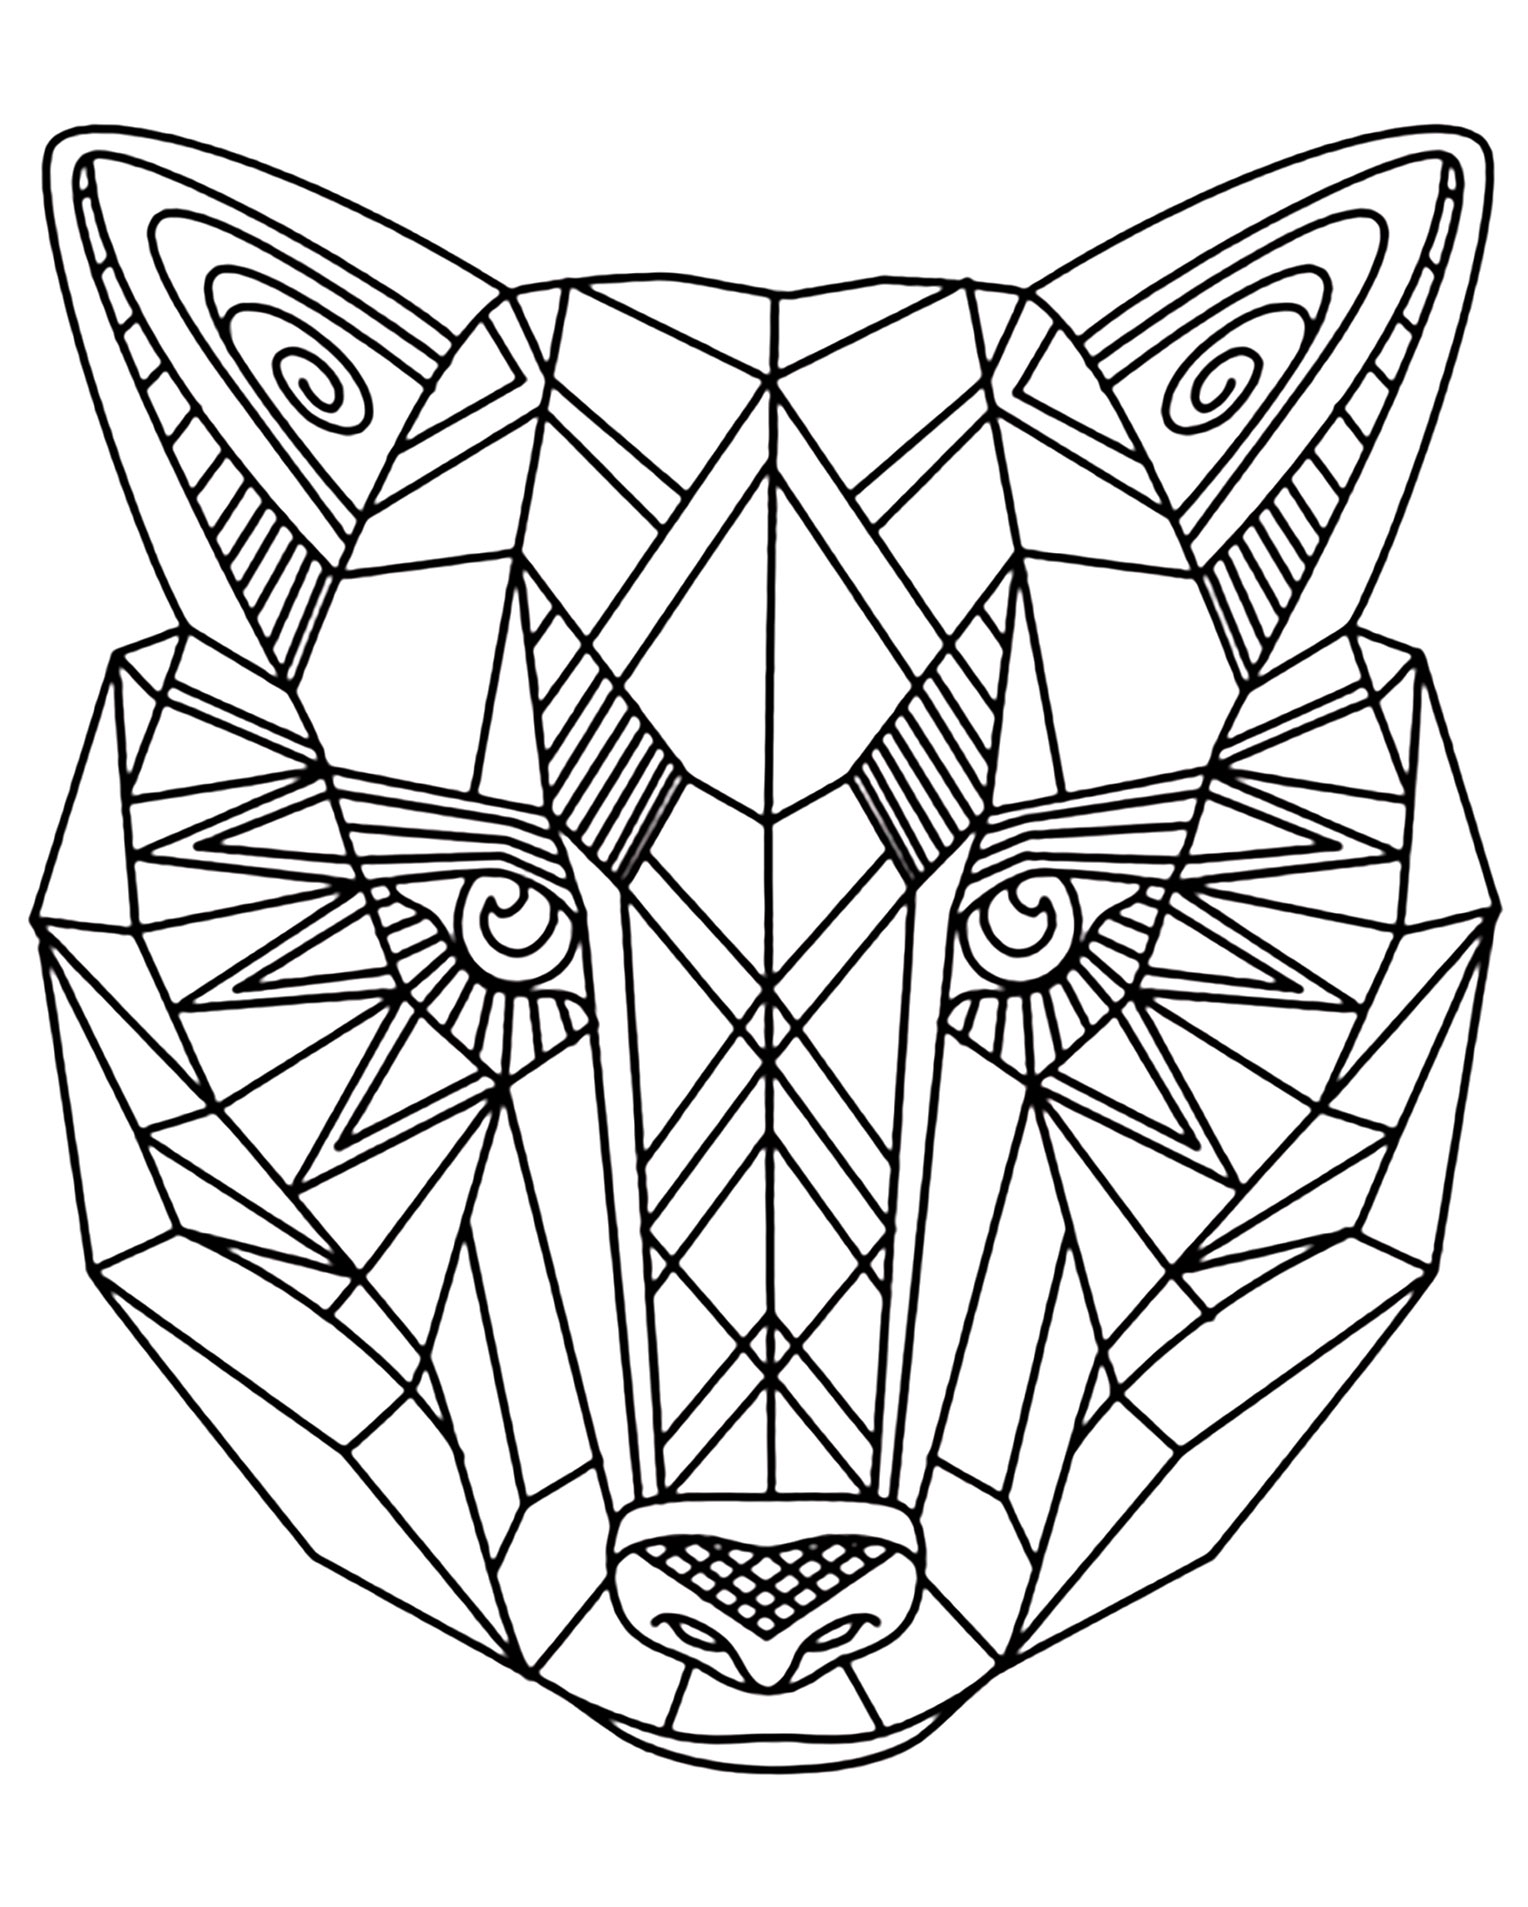 Dibujos para colorear de Lobo para imprimir